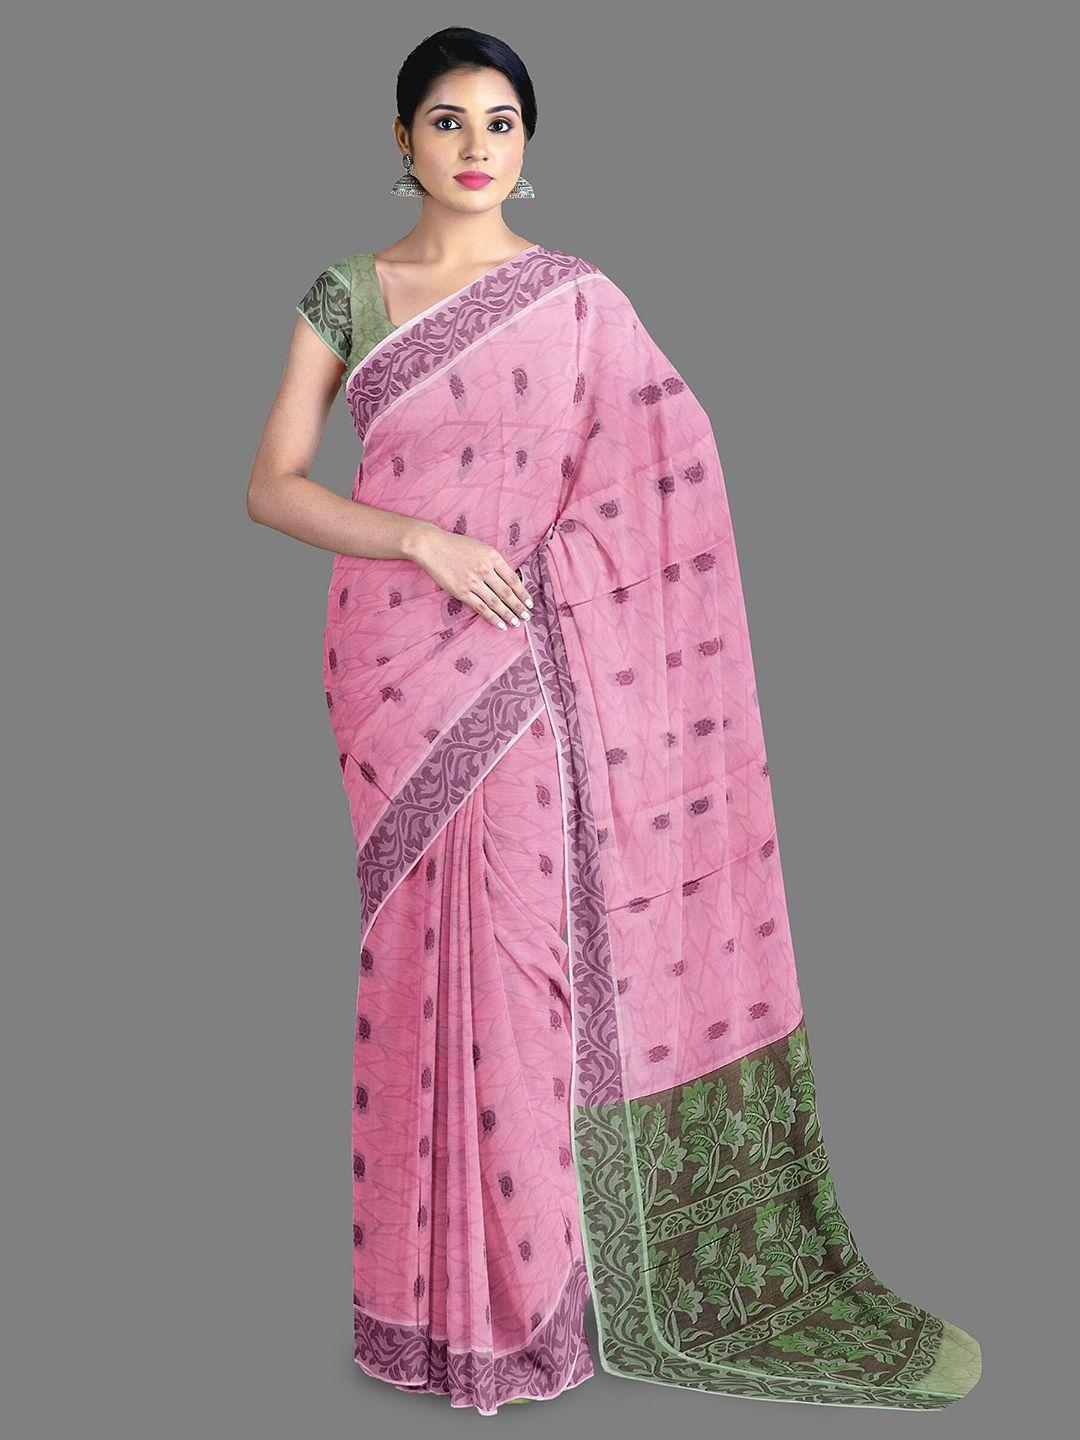 the-chennai-silks-ethnic-motifs-woven-design-pure-cotton-kovai-saree